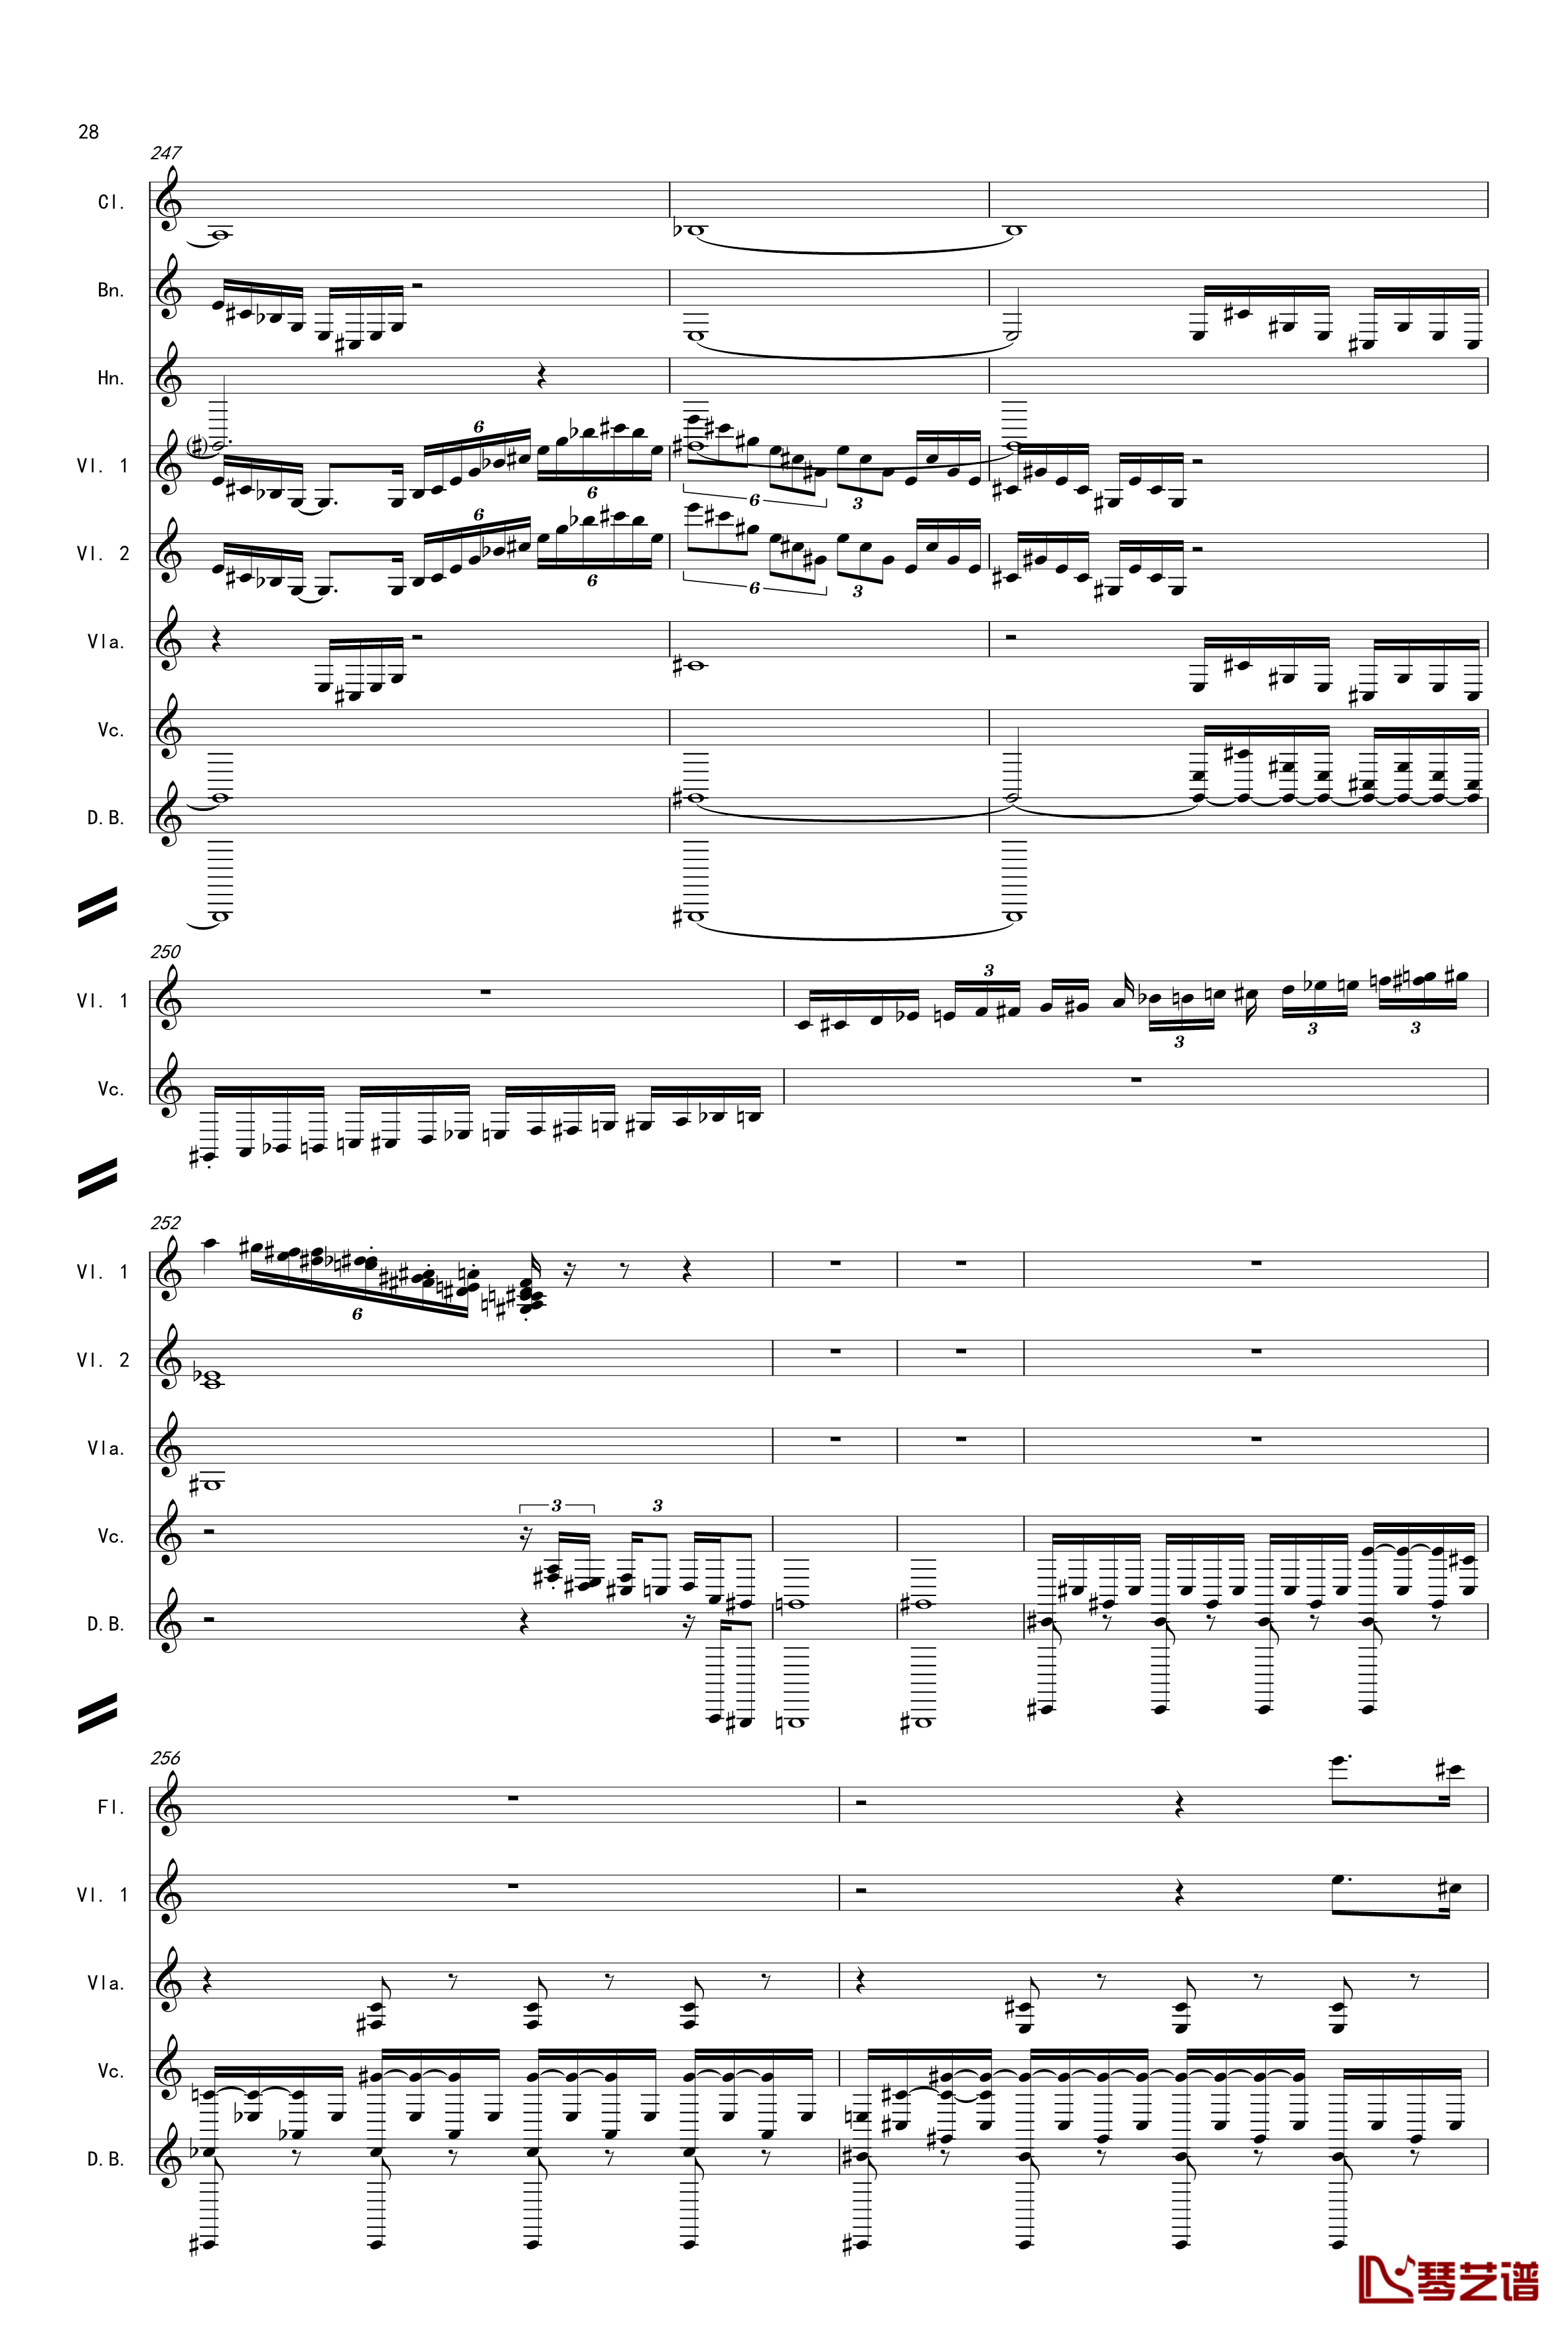 奏鸣曲之交响第14首Ⅲ钢琴谱-贝多芬-beethoven28